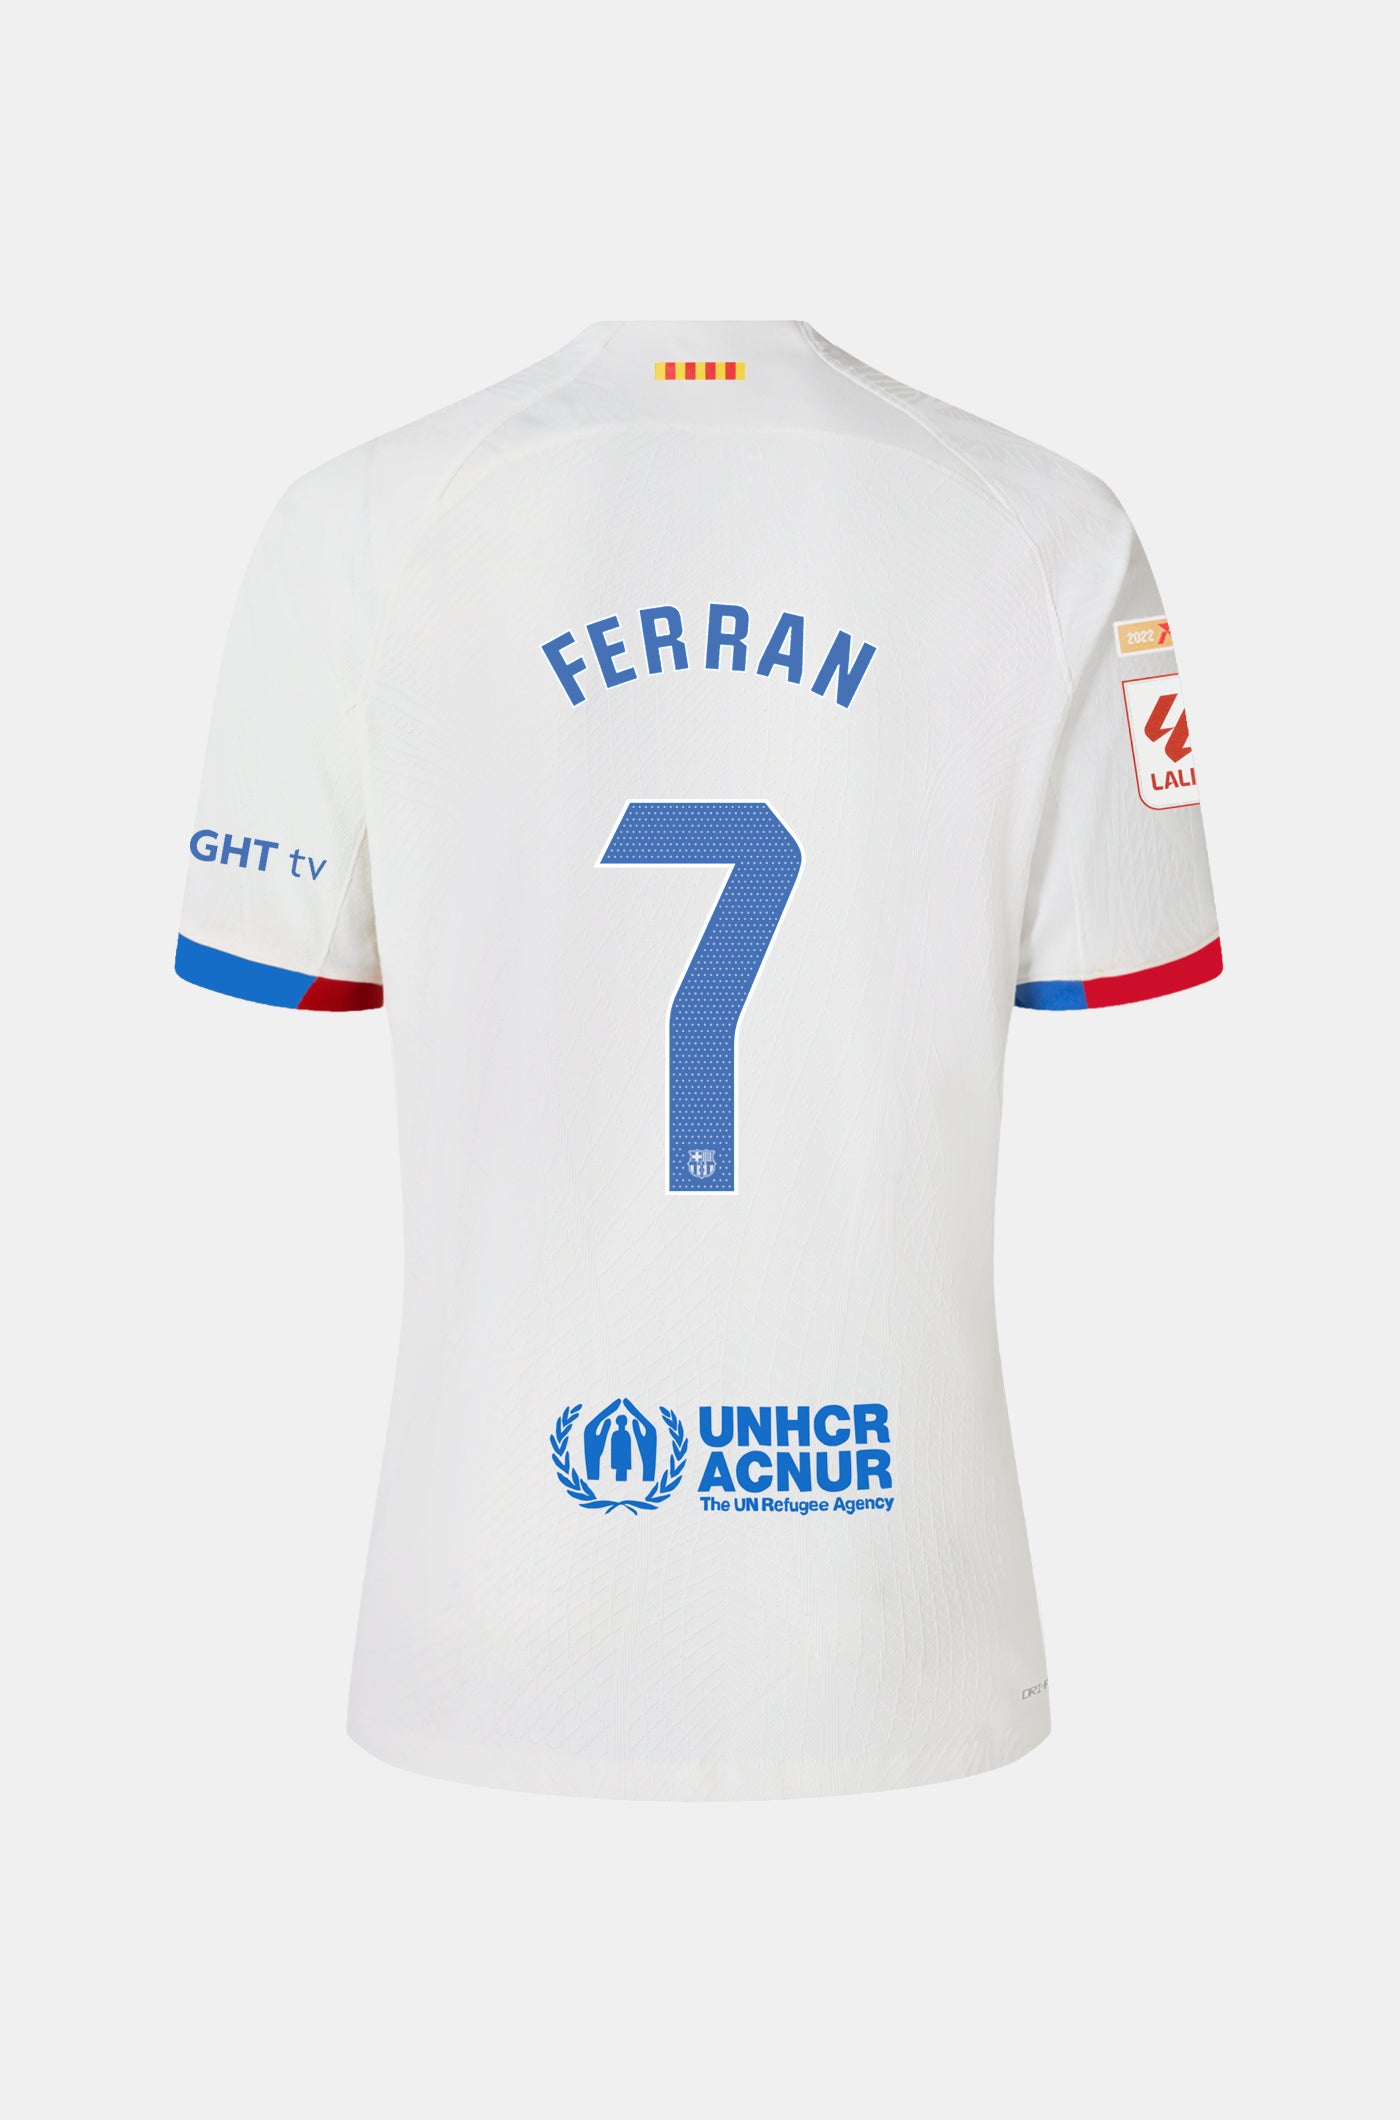 LFP FC Barcelona away shirt 23/24 Player’s Edition  - FERRAN